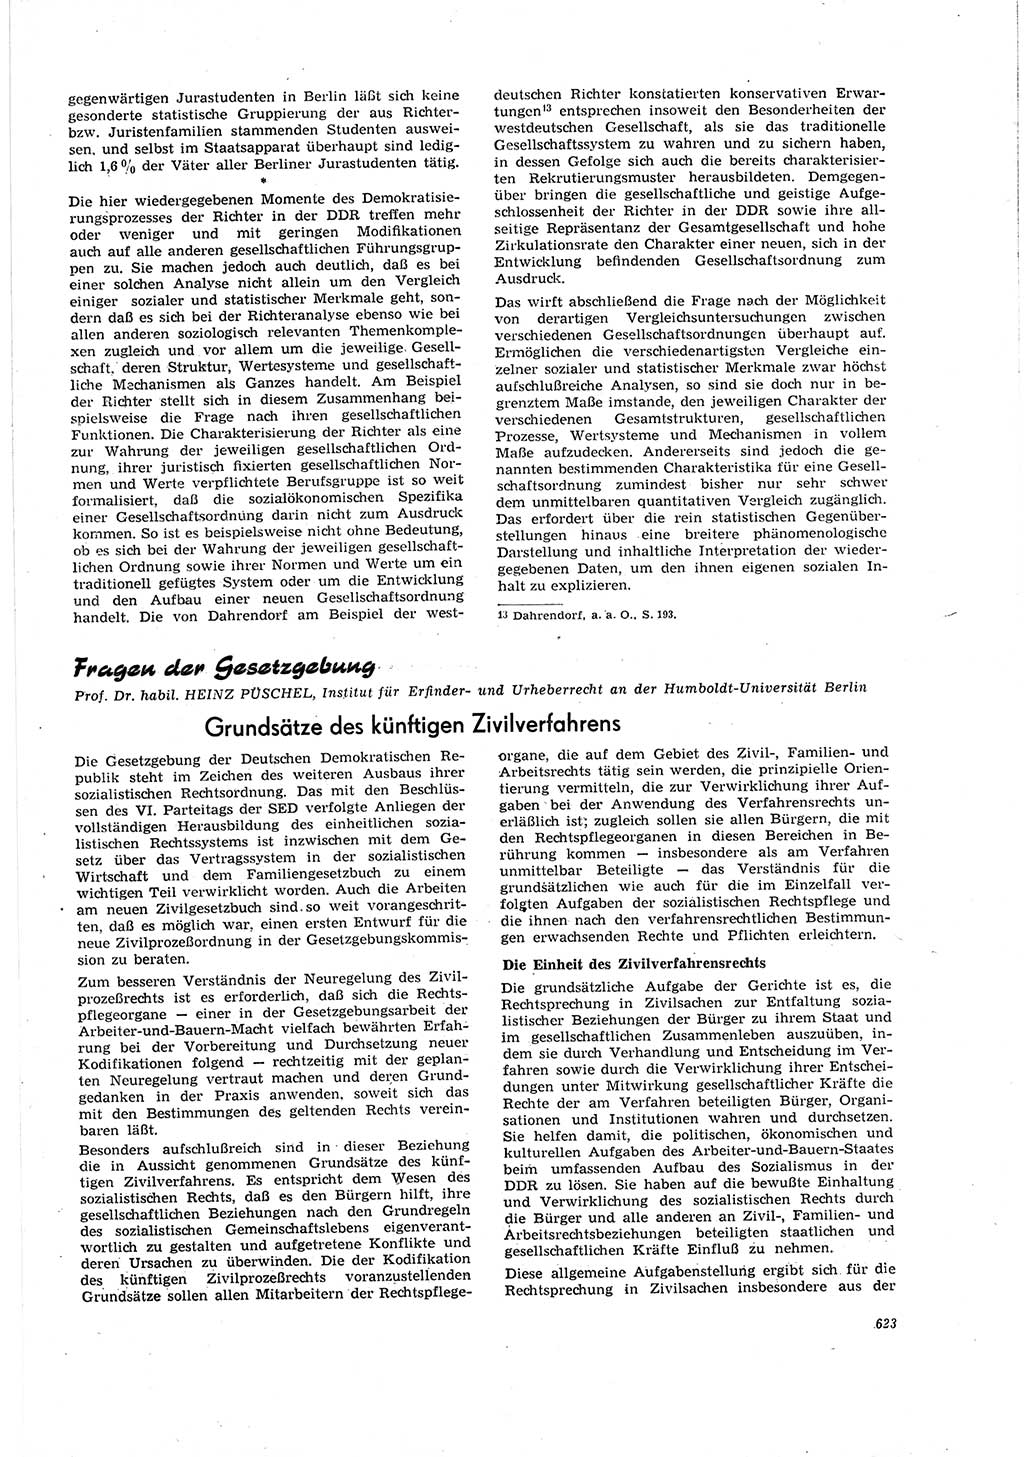 Neue Justiz (NJ), Zeitschrift für Recht und Rechtswissenschaft [Deutsche Demokratische Republik (DDR)], 20. Jahrgang 1966, Seite 623 (NJ DDR 1966, S. 623)